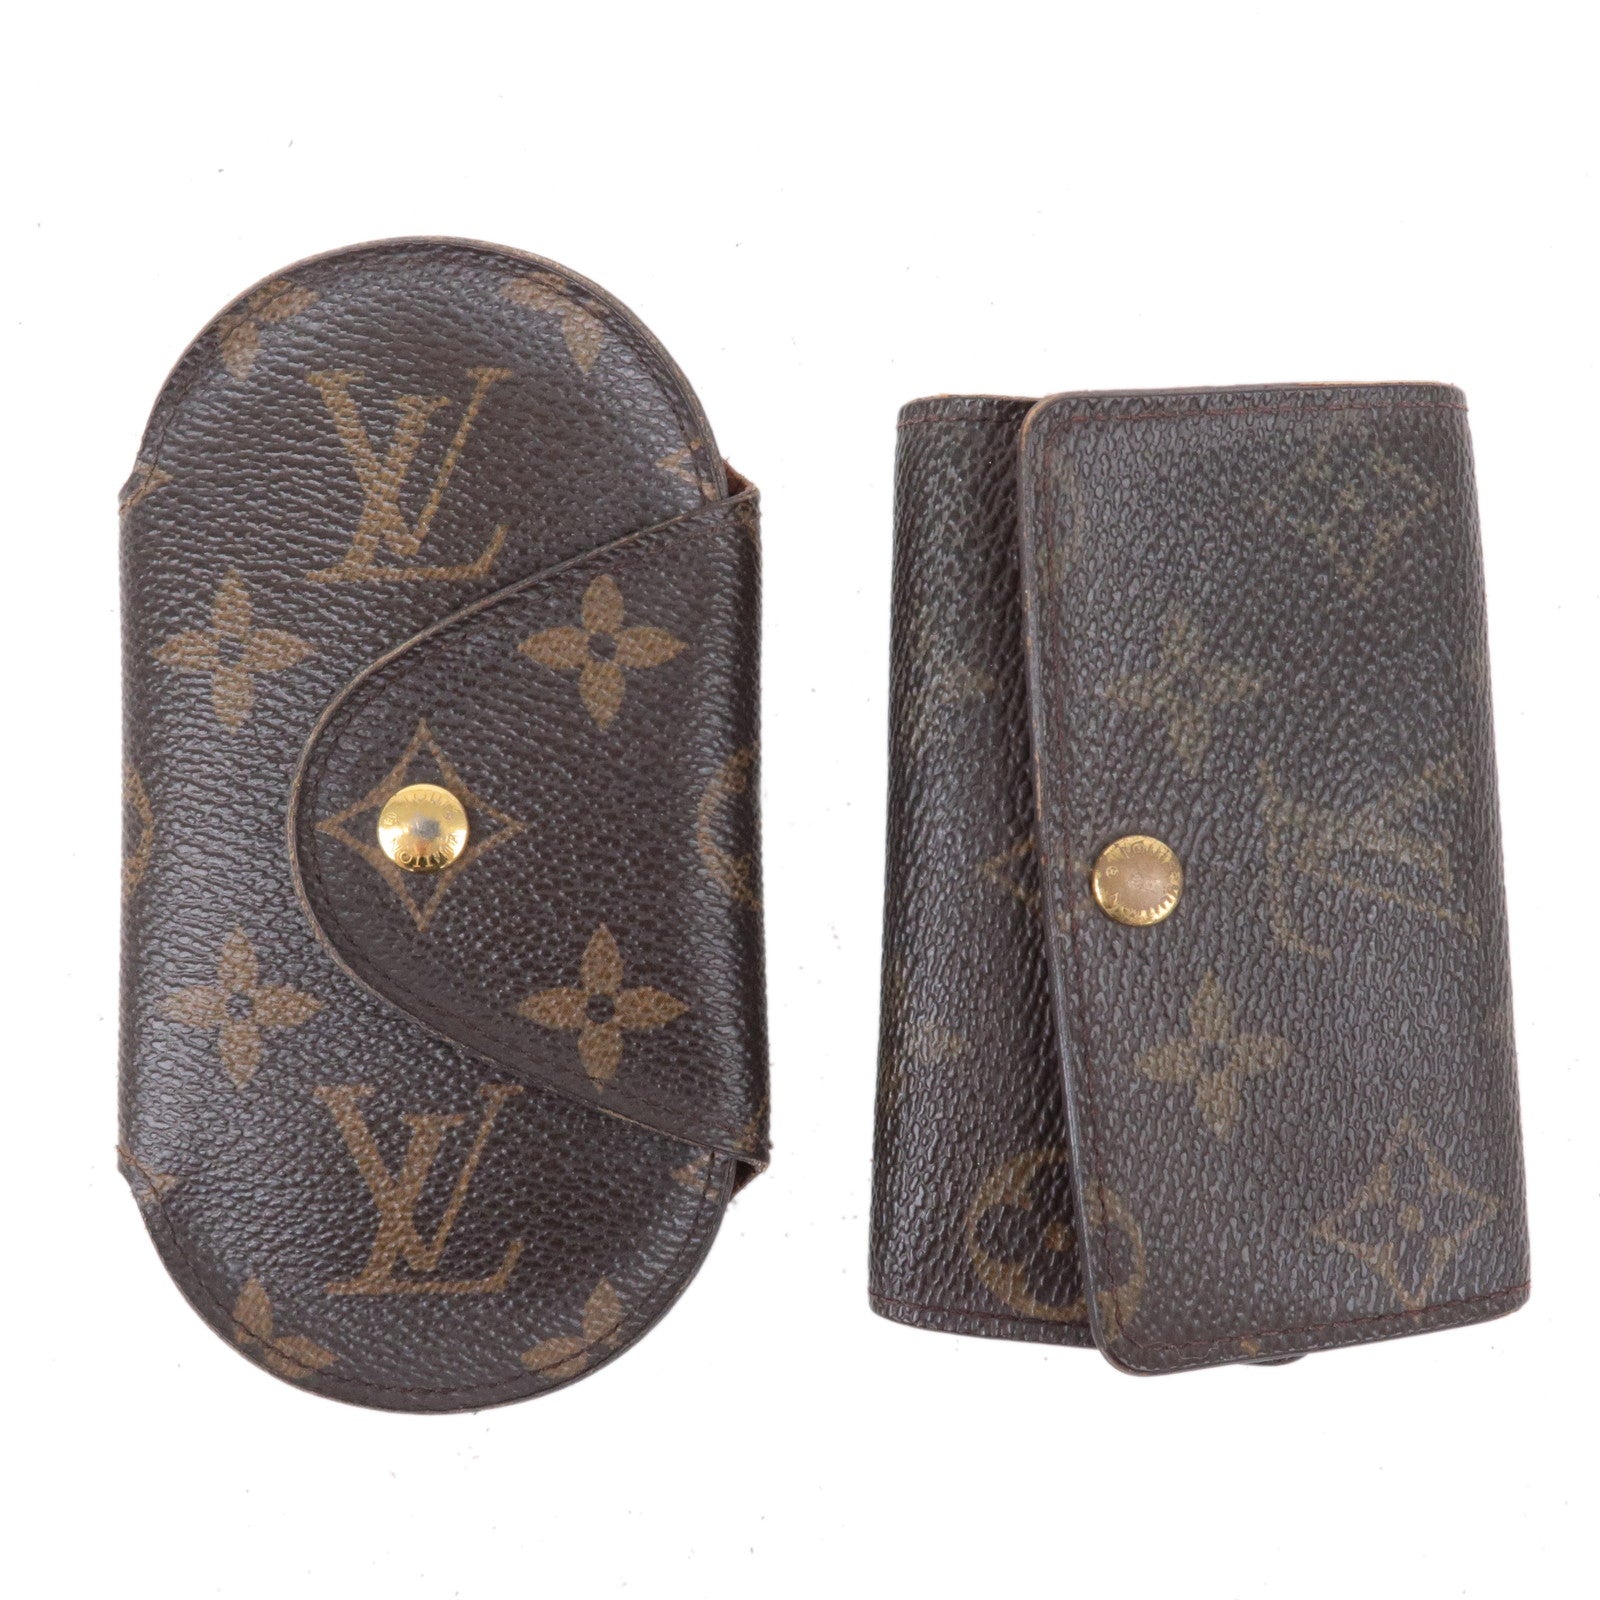 Louis Vuitton Monogram Round Key Holder